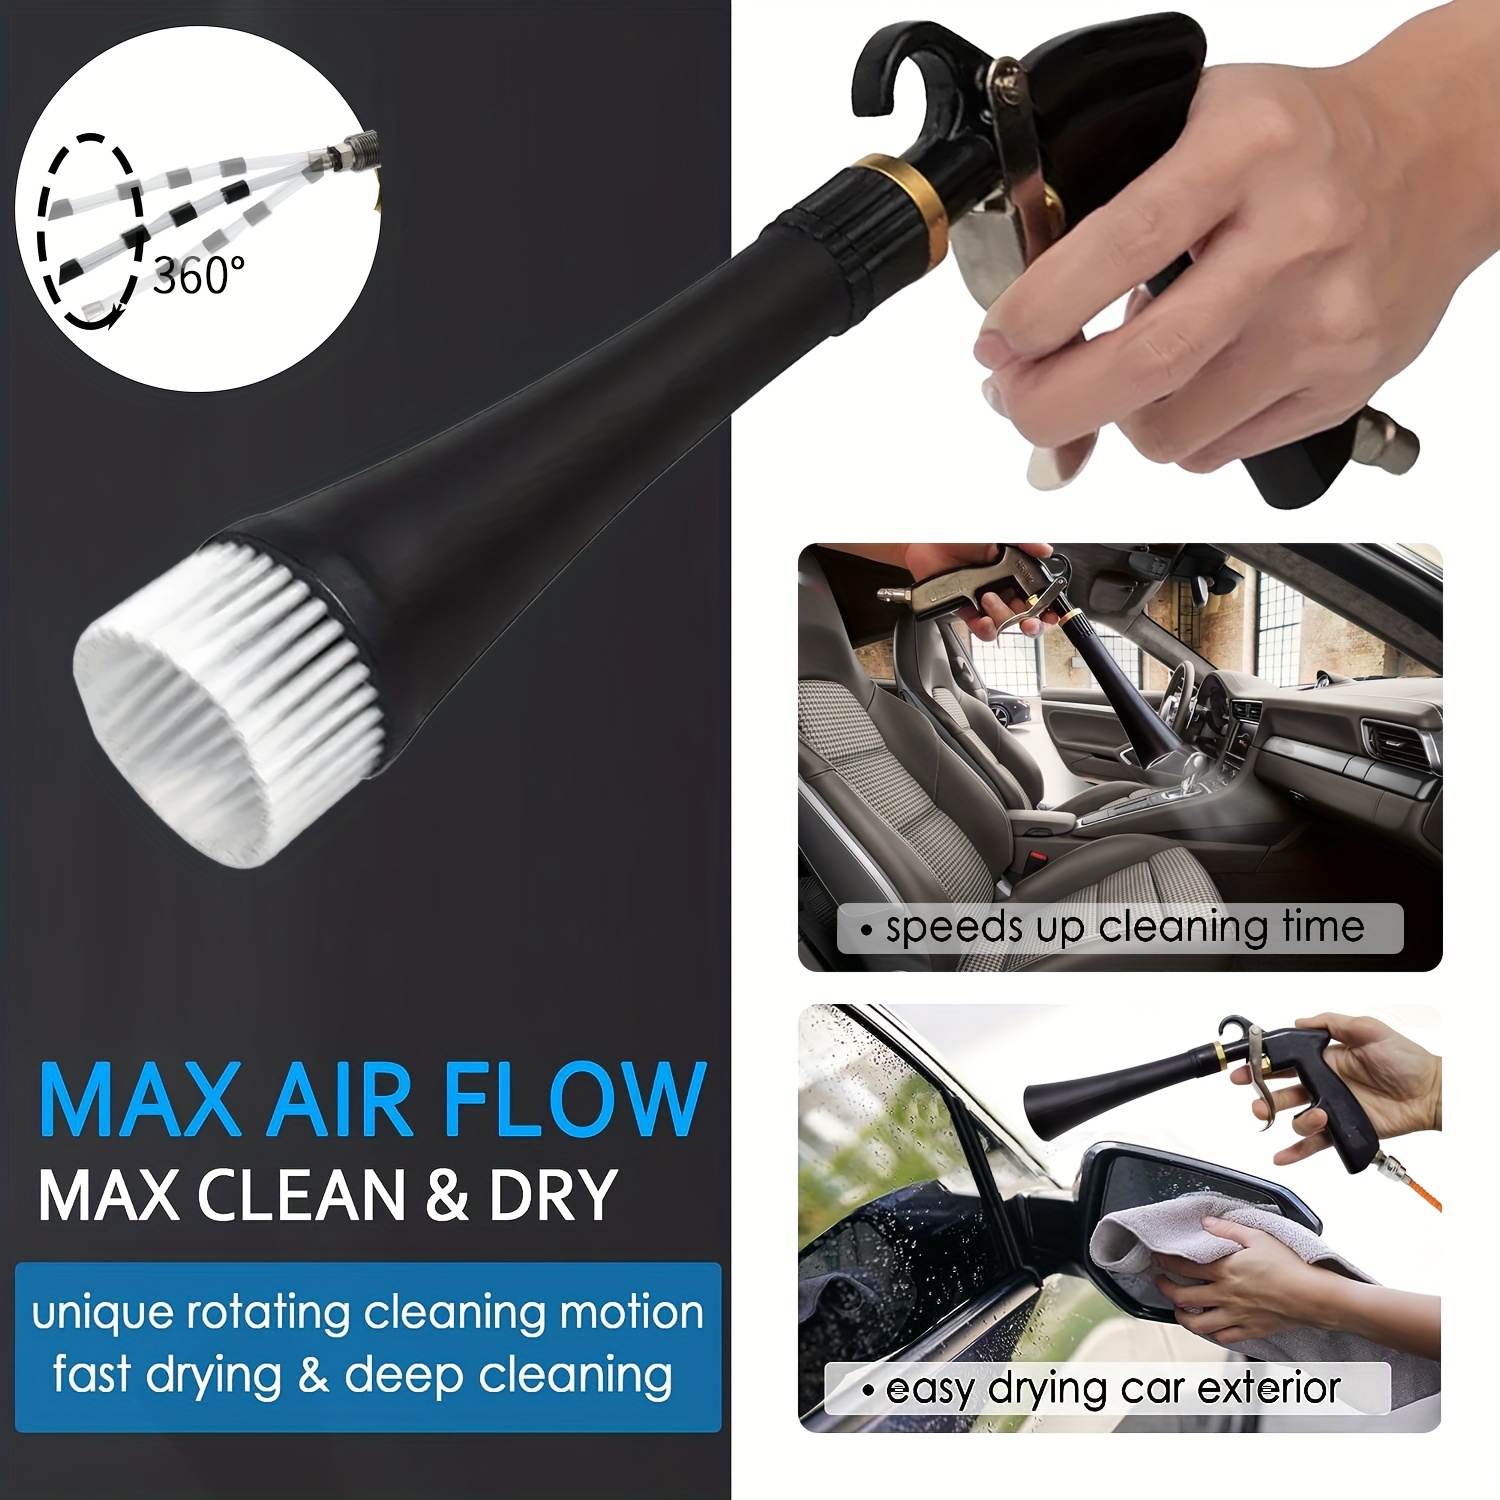 Compressed Air Cleaning Gun, Car Interior Cleaning Gun Air Pulse